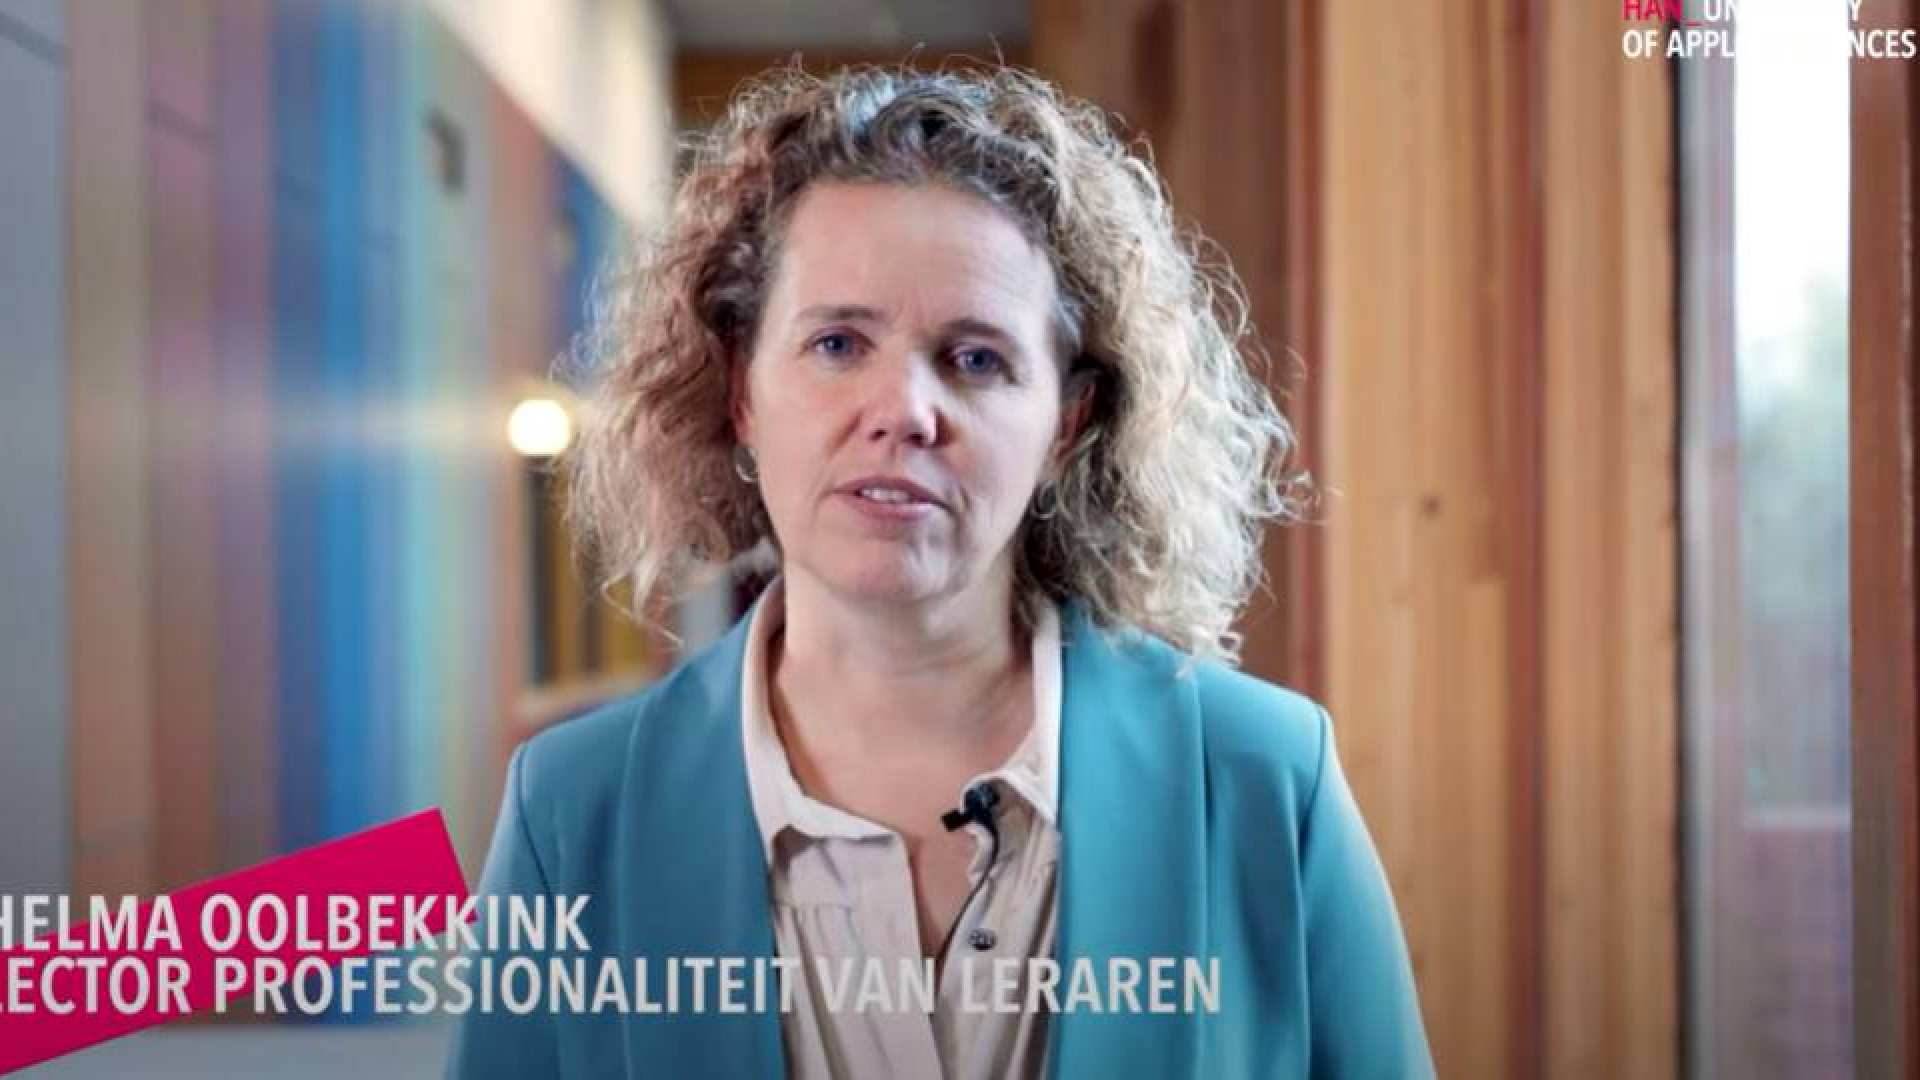 videostill uit de video over het Lectoraat Professionaliteit van Leraren met Helma Oolbekkink-Marchand